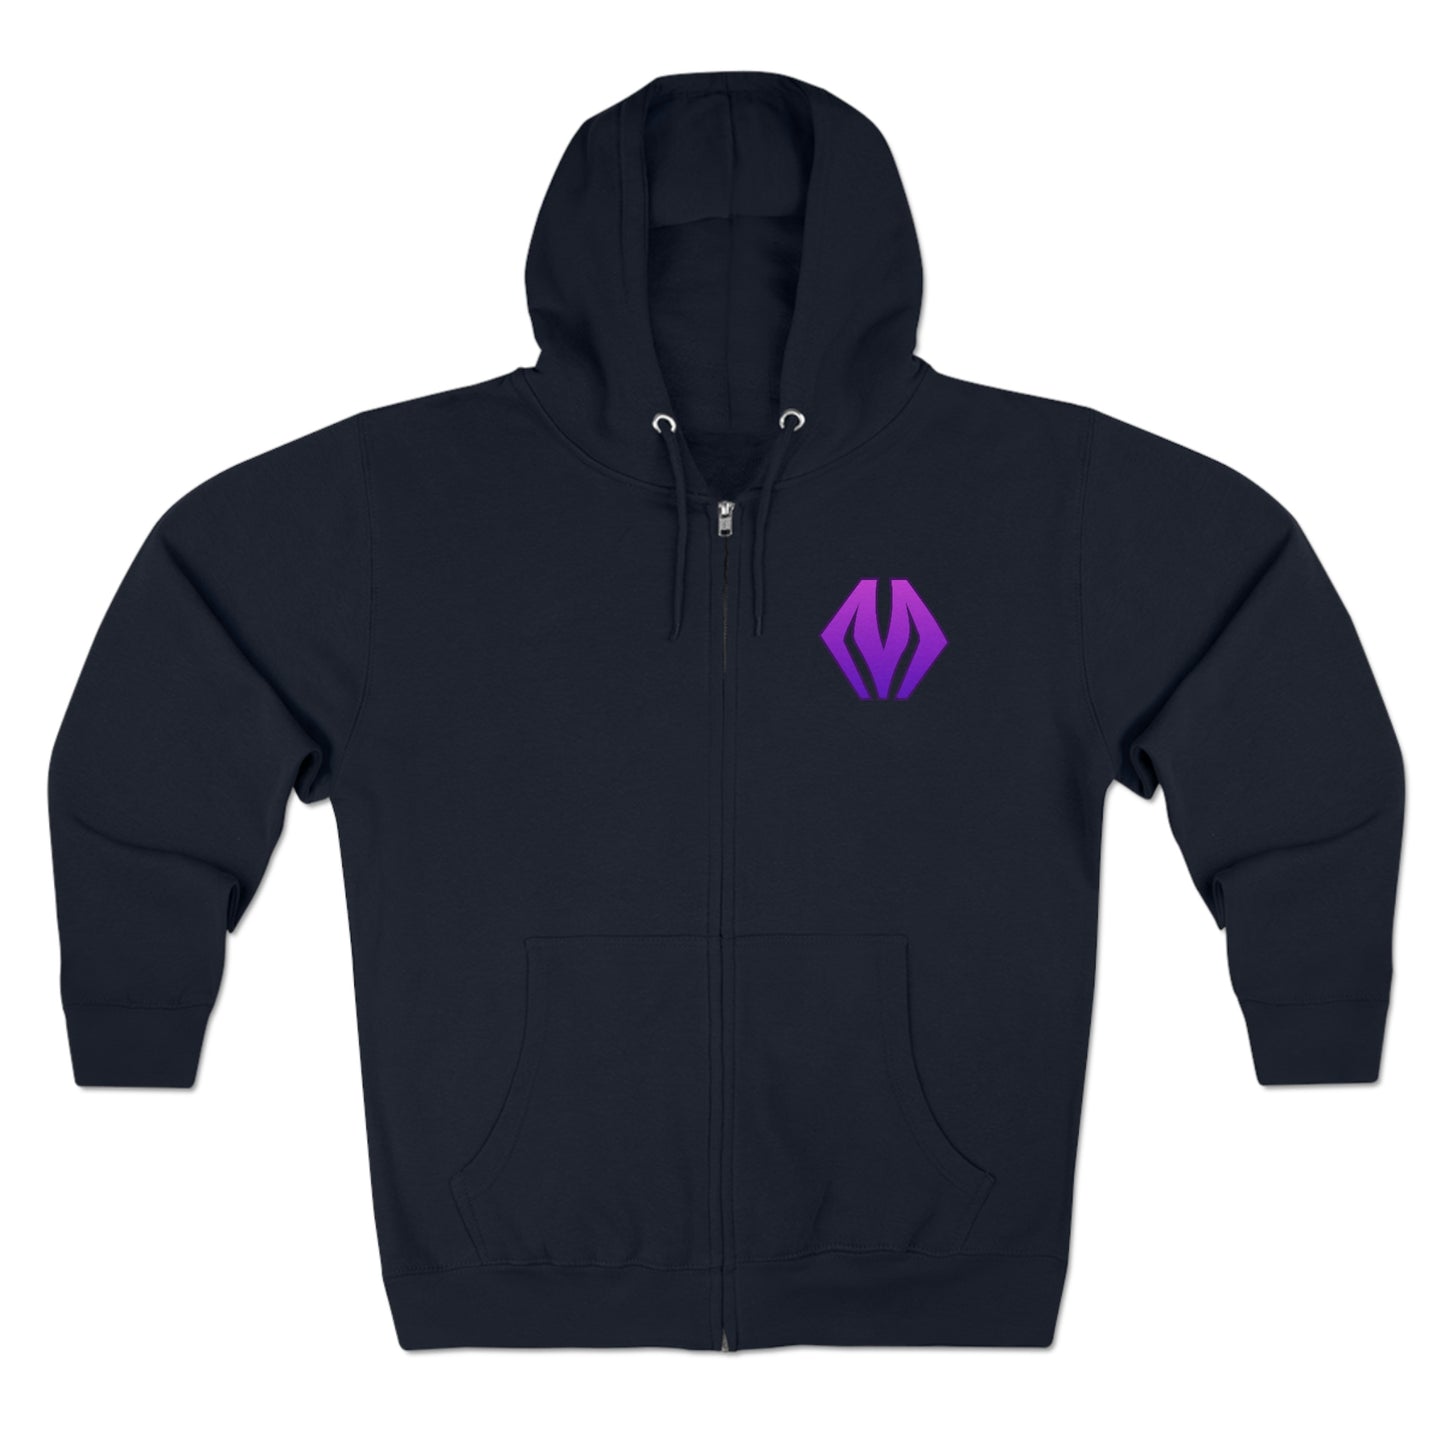 M logo / Deinopis logo - Unisex Premium Full Zip Hoodie